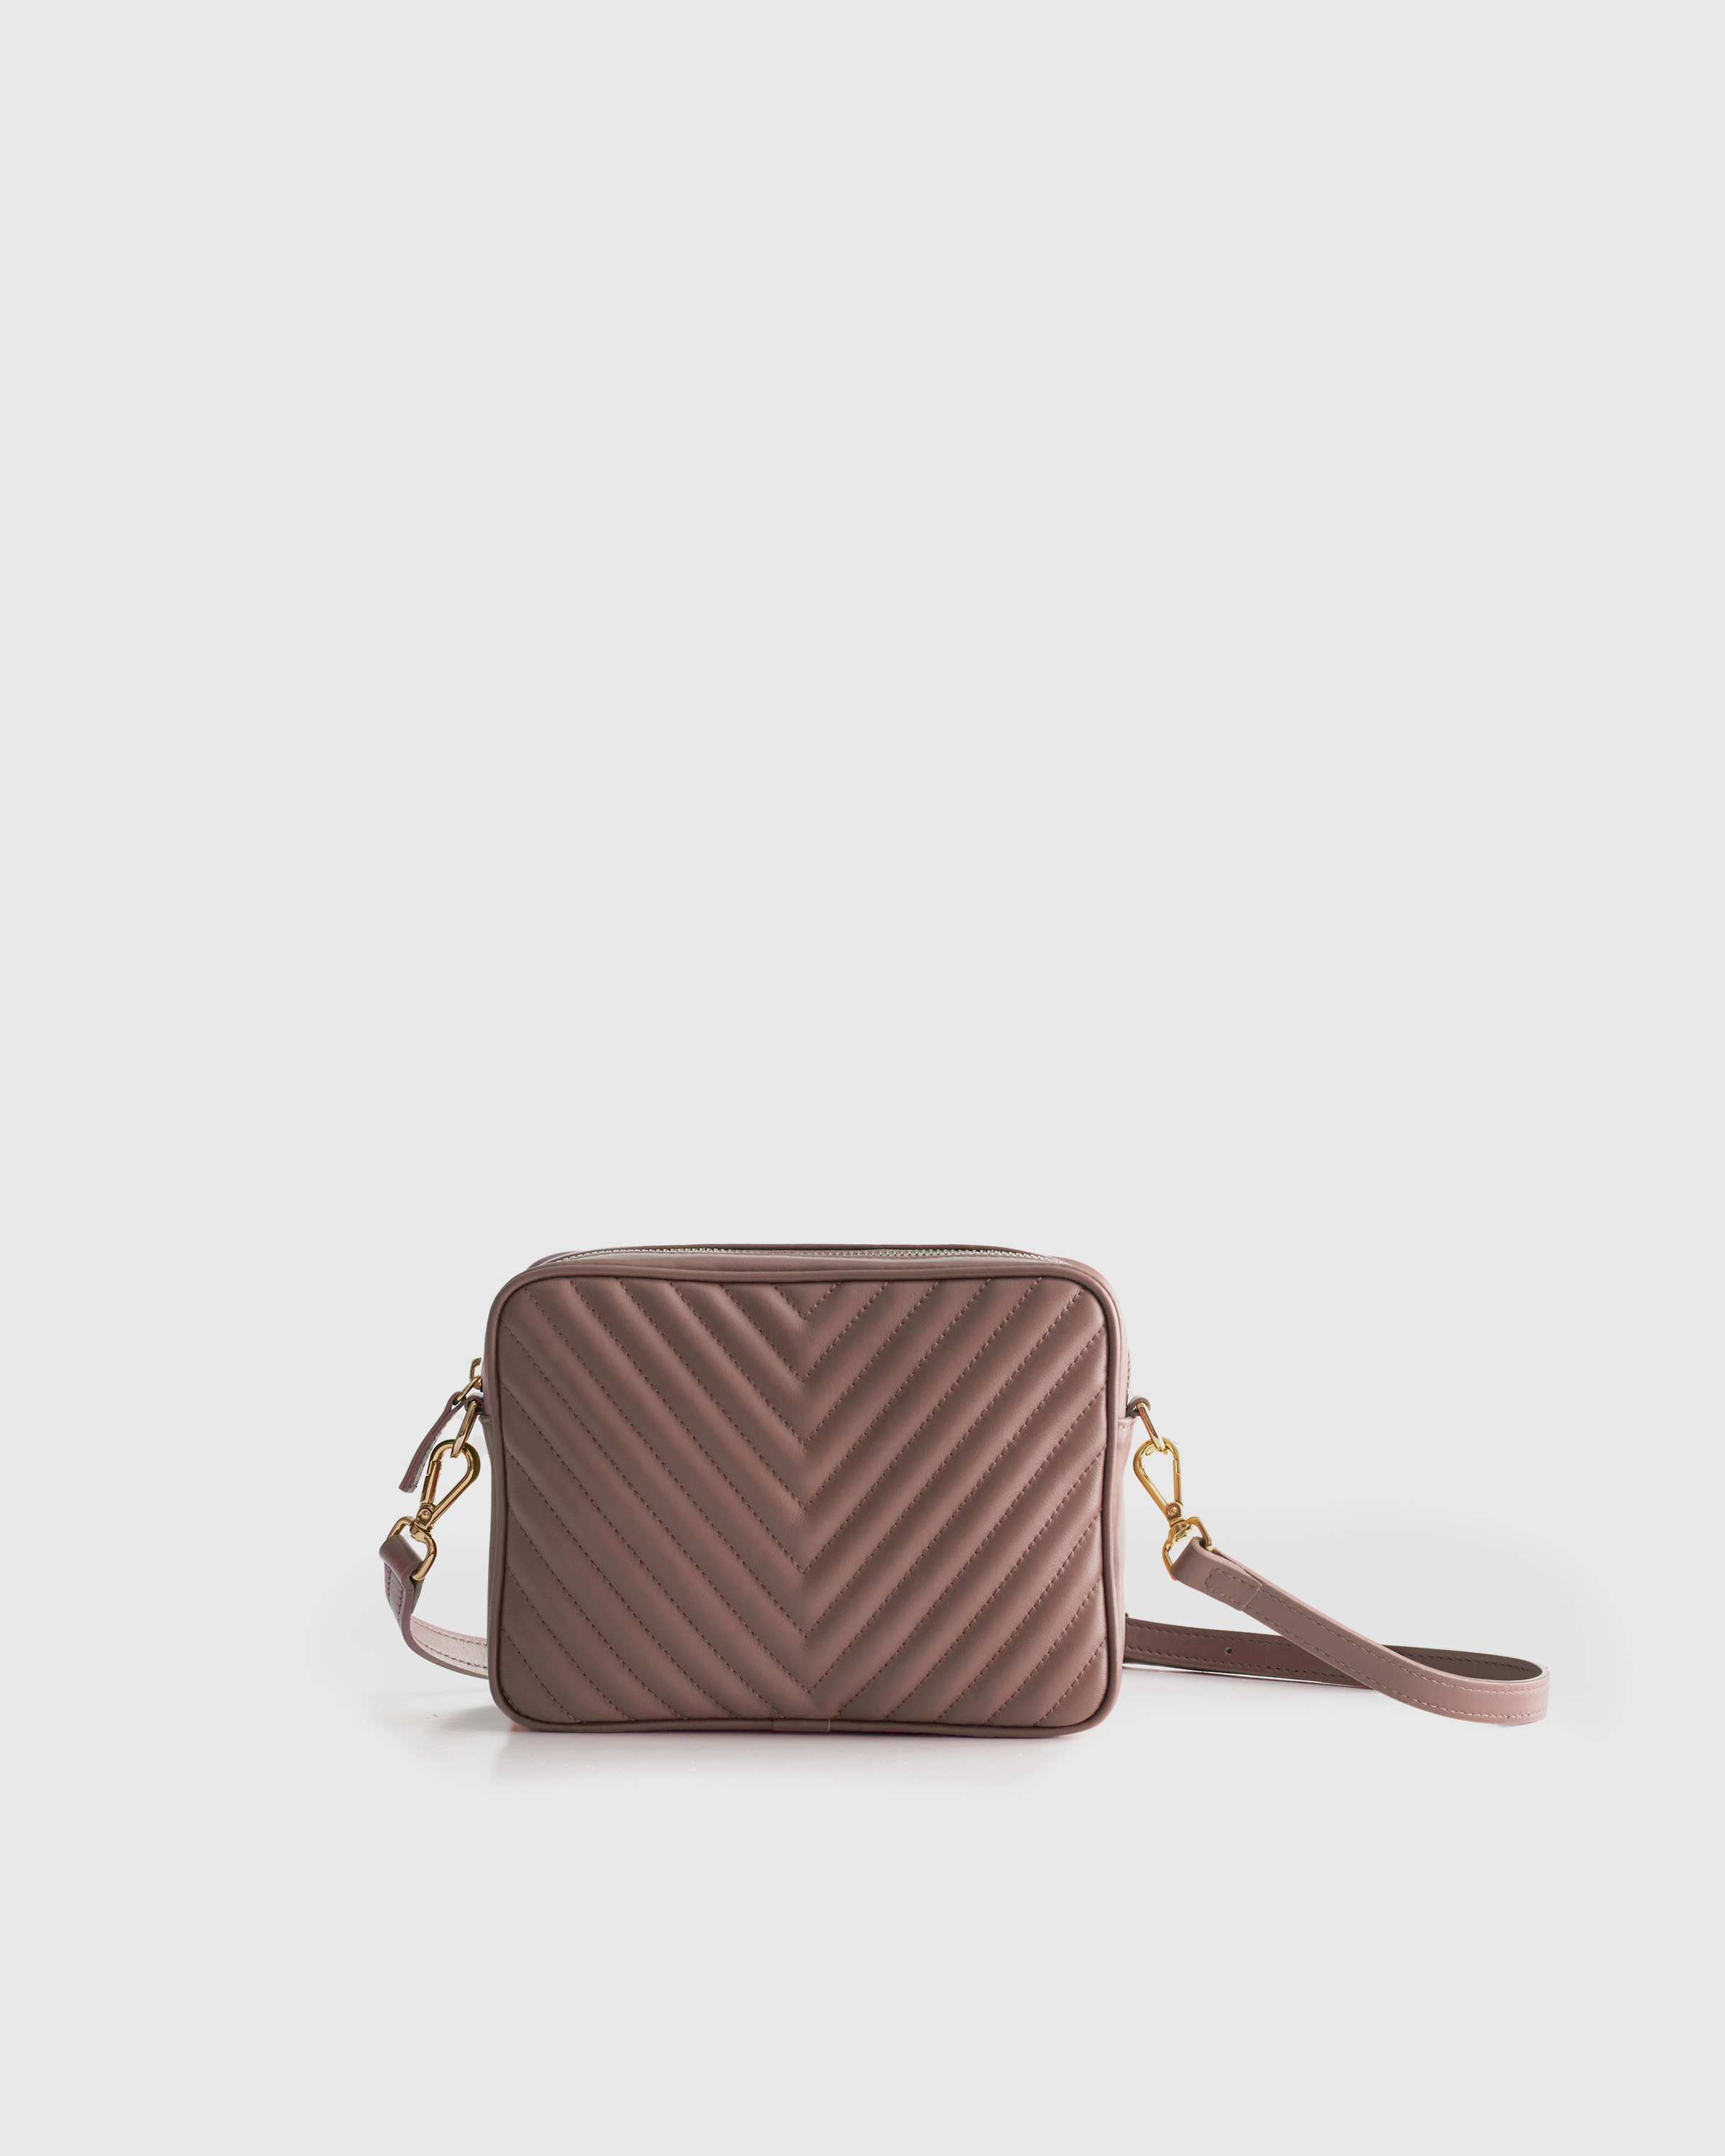 Michael Kors Bags | Michael Kors Large Double Zip Wallet Wristlet | Color: Brown/Pink | Size: Os | Designpalace's Closet